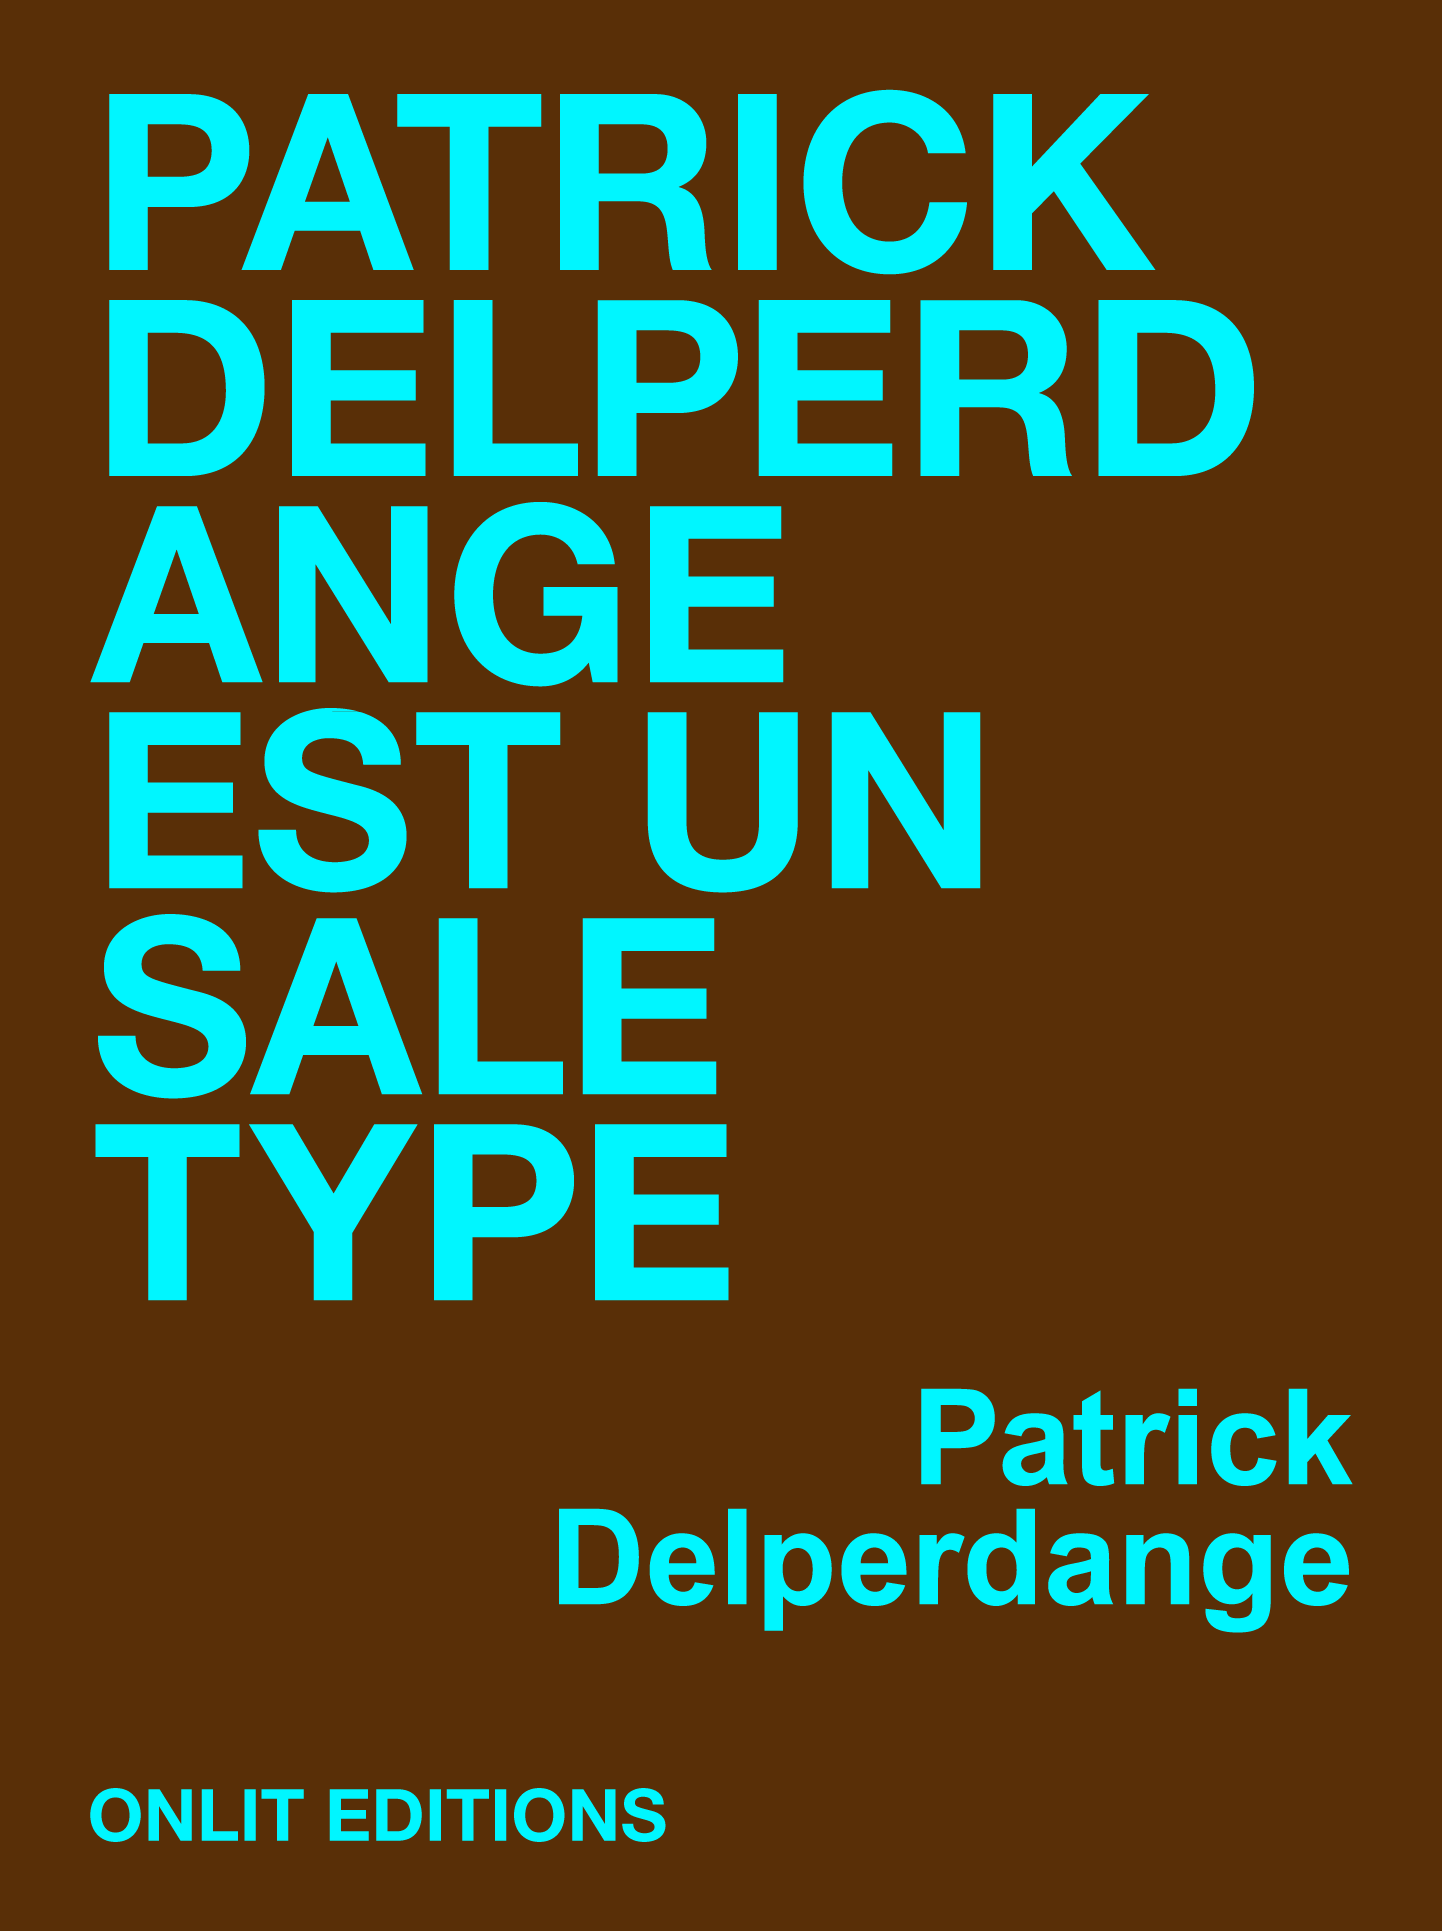 Patrick Delperdange est un sale type